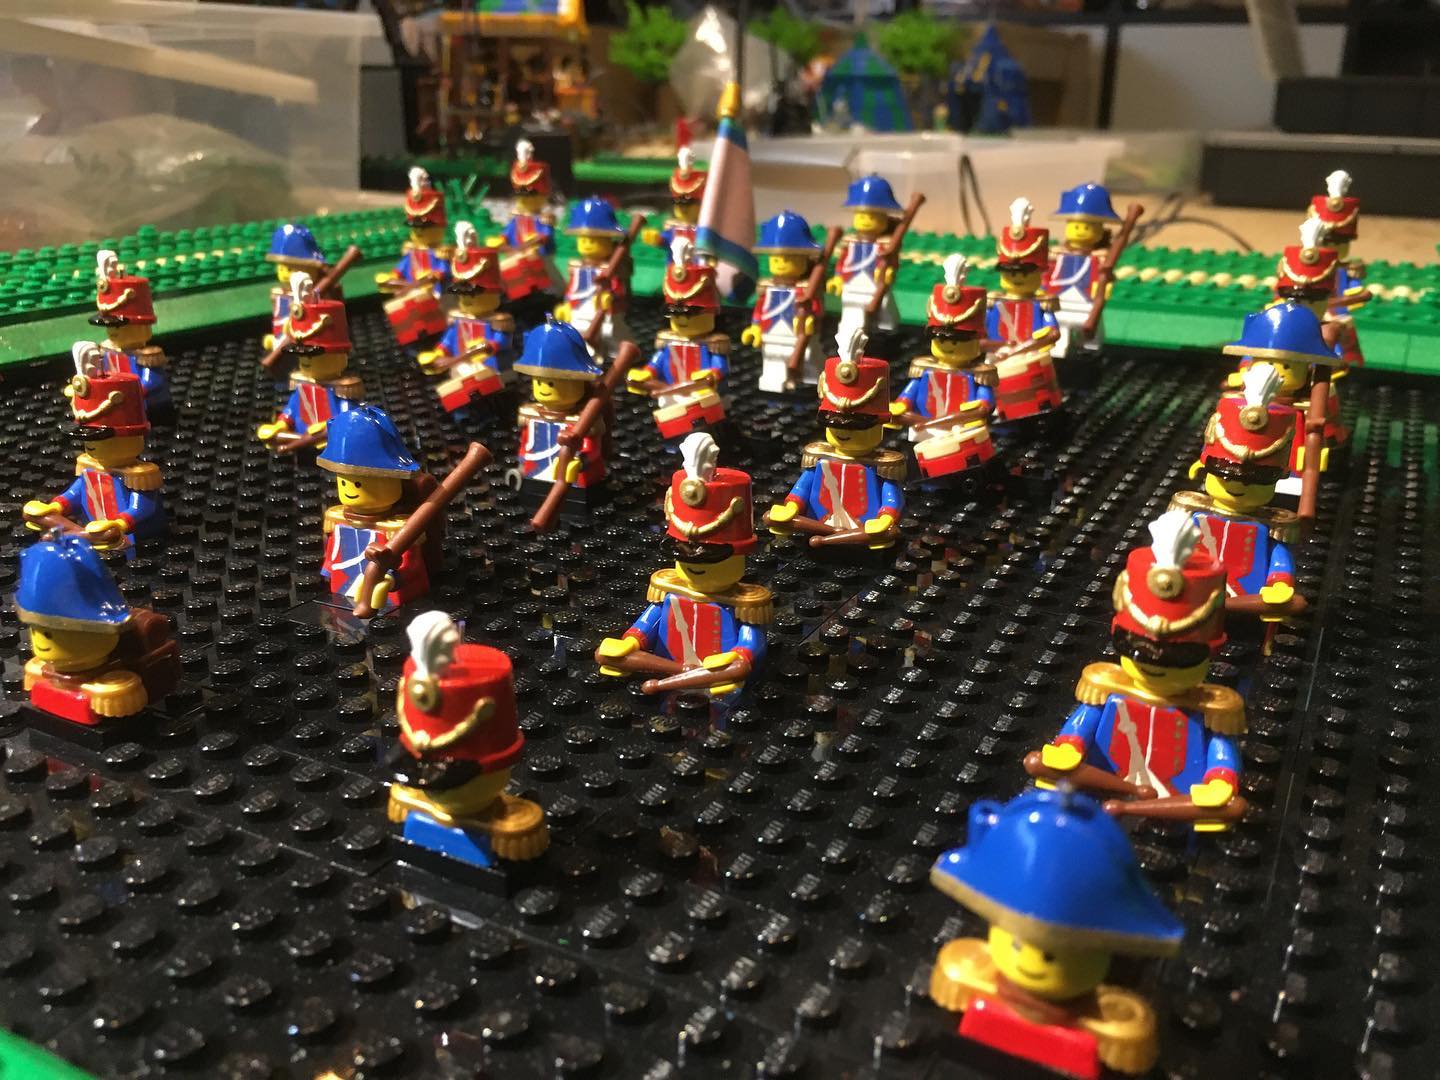 Afgelopen jaar hebben de #lego soldaatjes van Waterloo een nieuw likje verf gehad. Volgen de échte soldaten in #poortvanheusden ook binnenkort, @gemeenteheusden ?